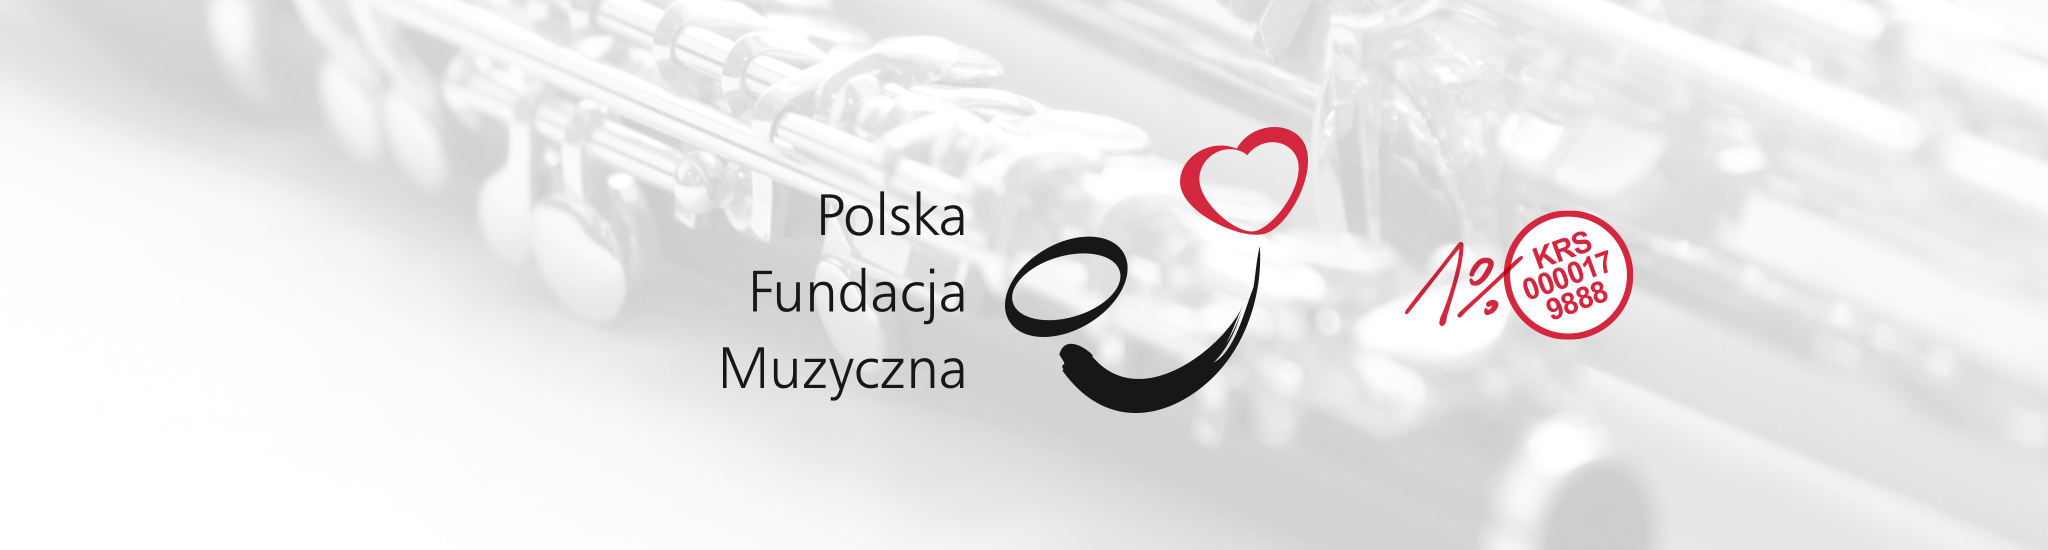 Polska Fundacja Muzyczna